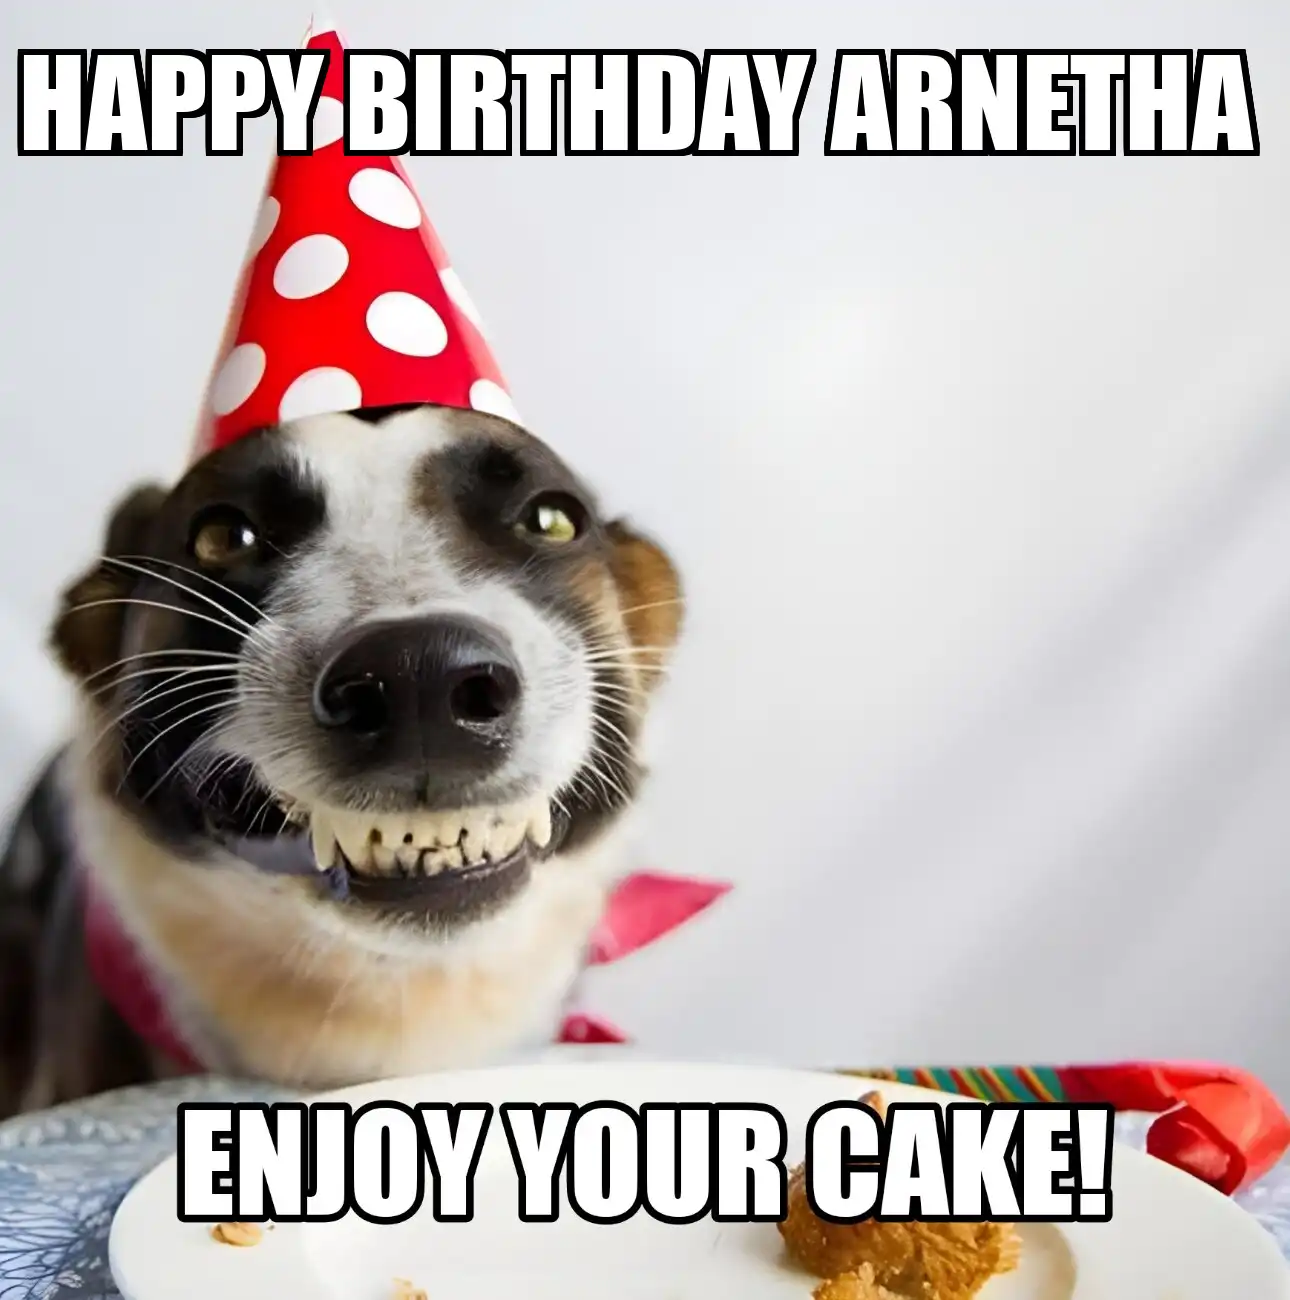 Happy Birthday Arnetha Enjoy Your Cake Dog Meme